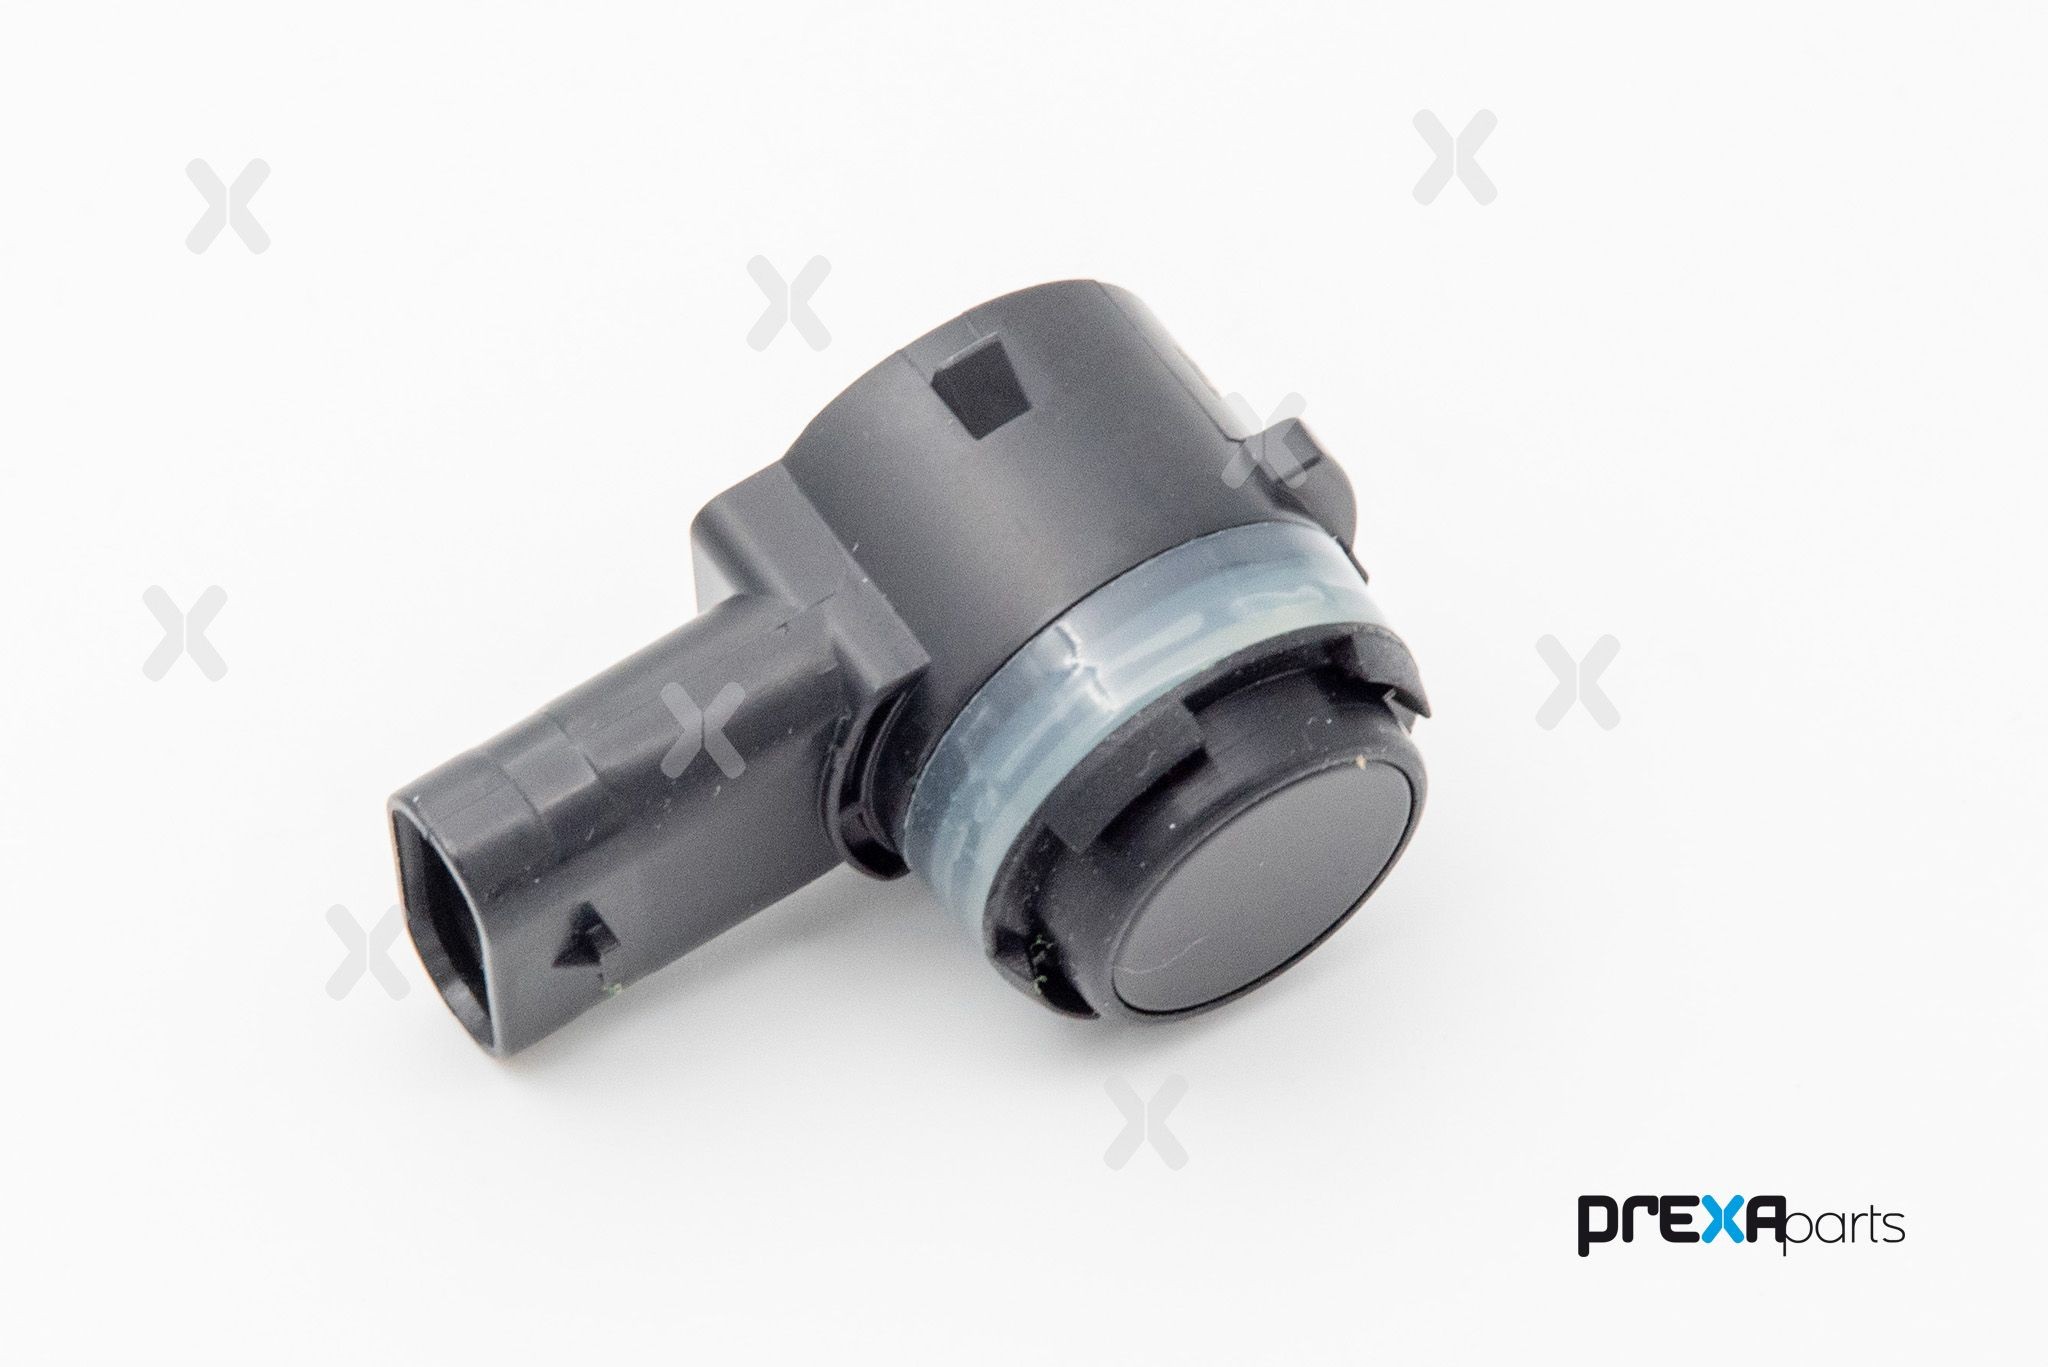 PREXAparts P303014 Parking sensor